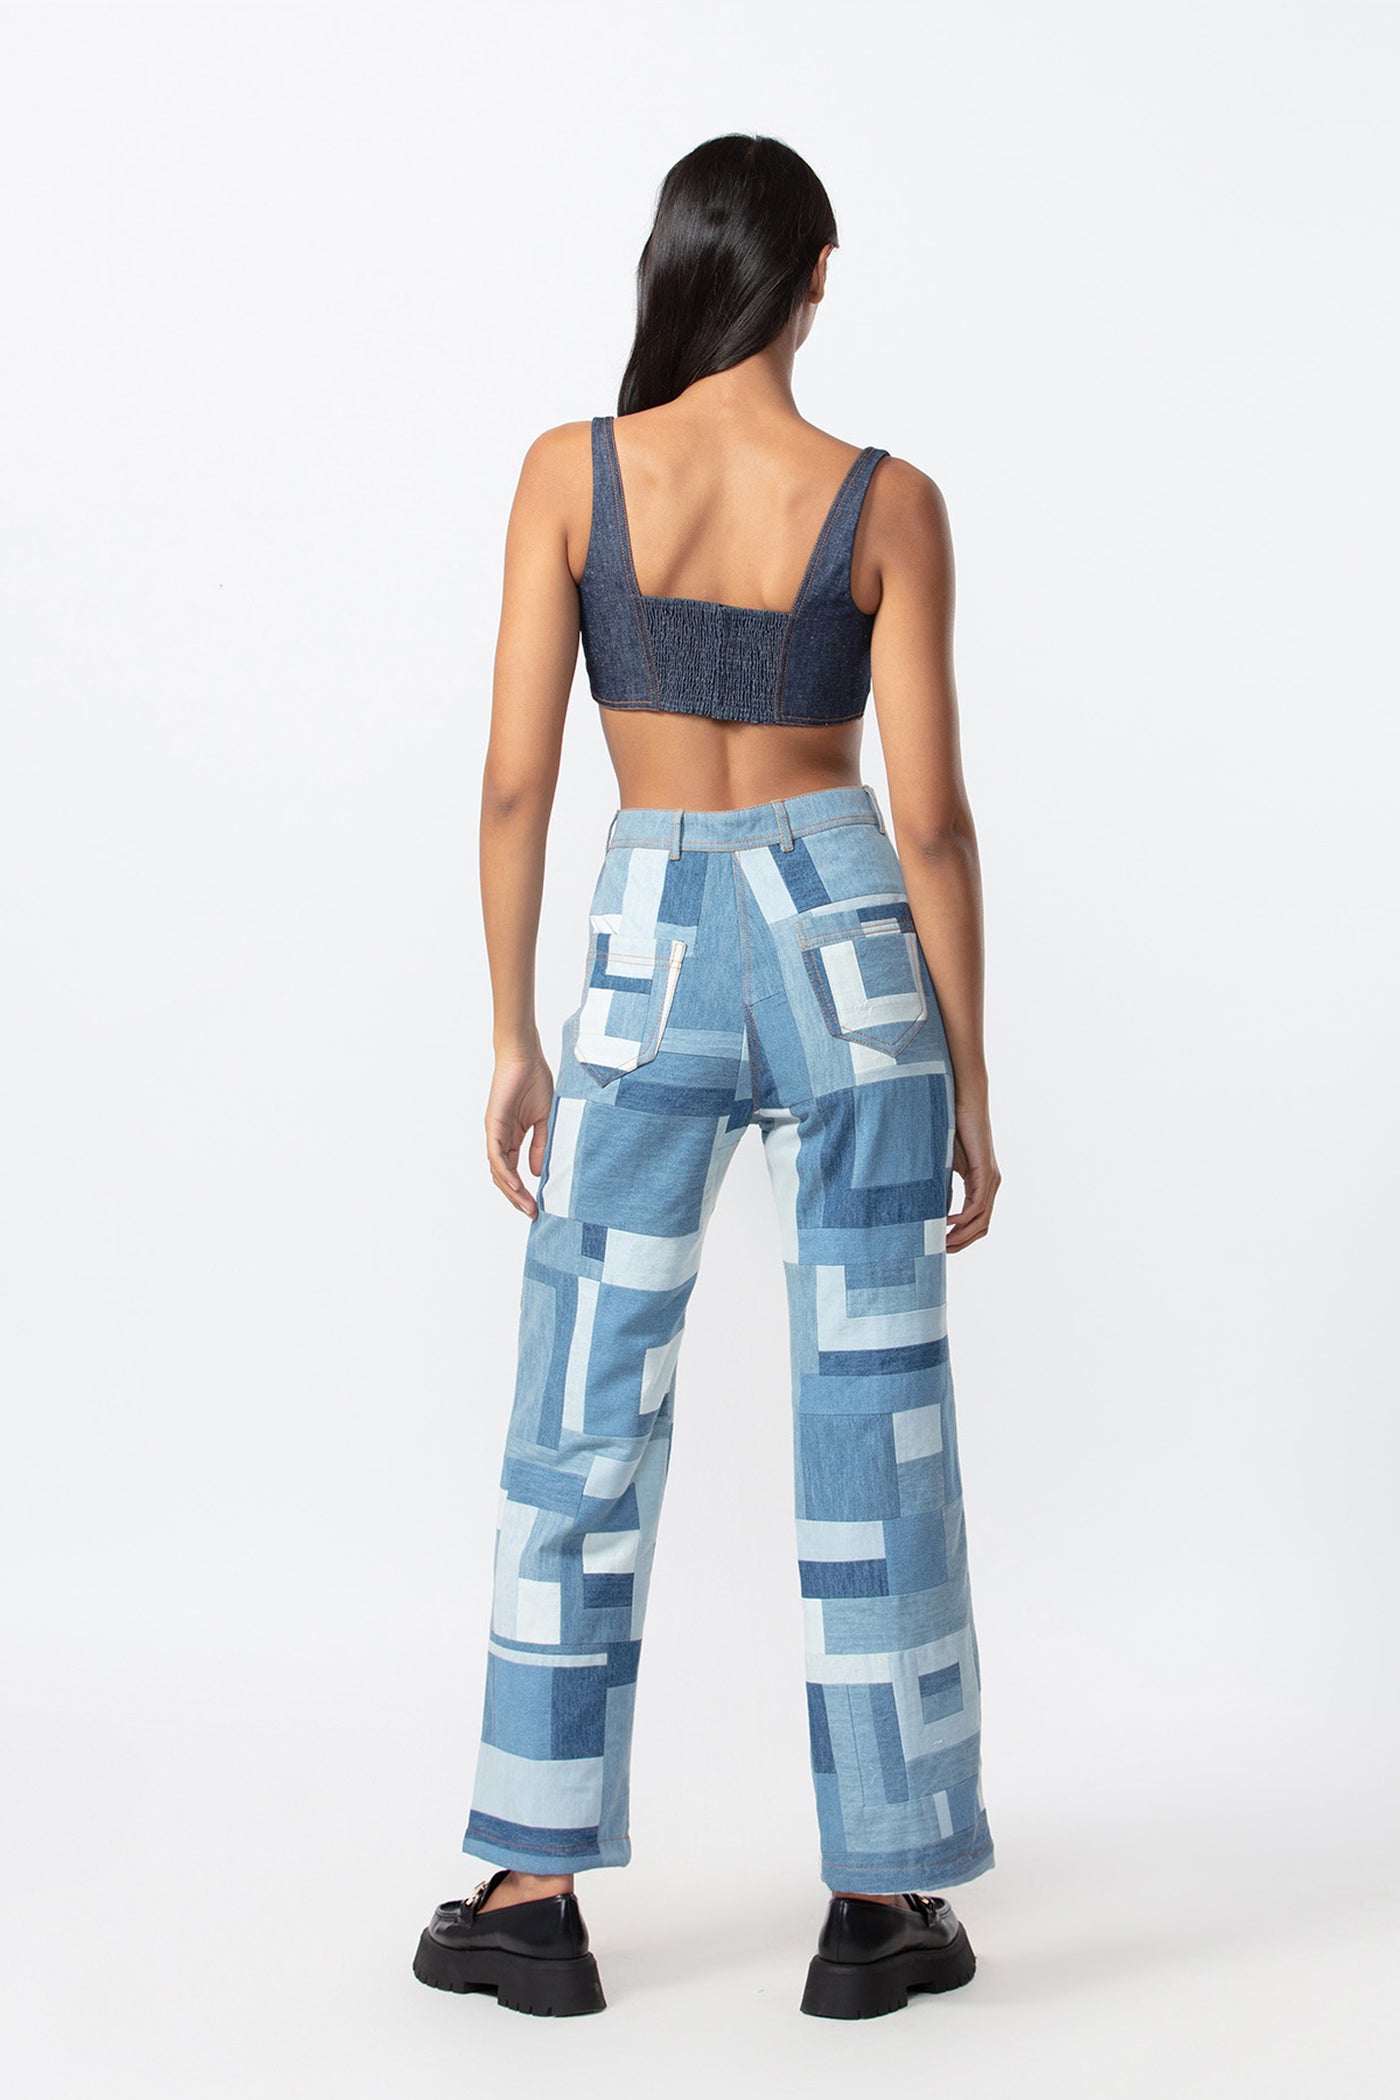 Saaksha and Kinni Tri color patchwork jeans indian designer online shopping melange singapore